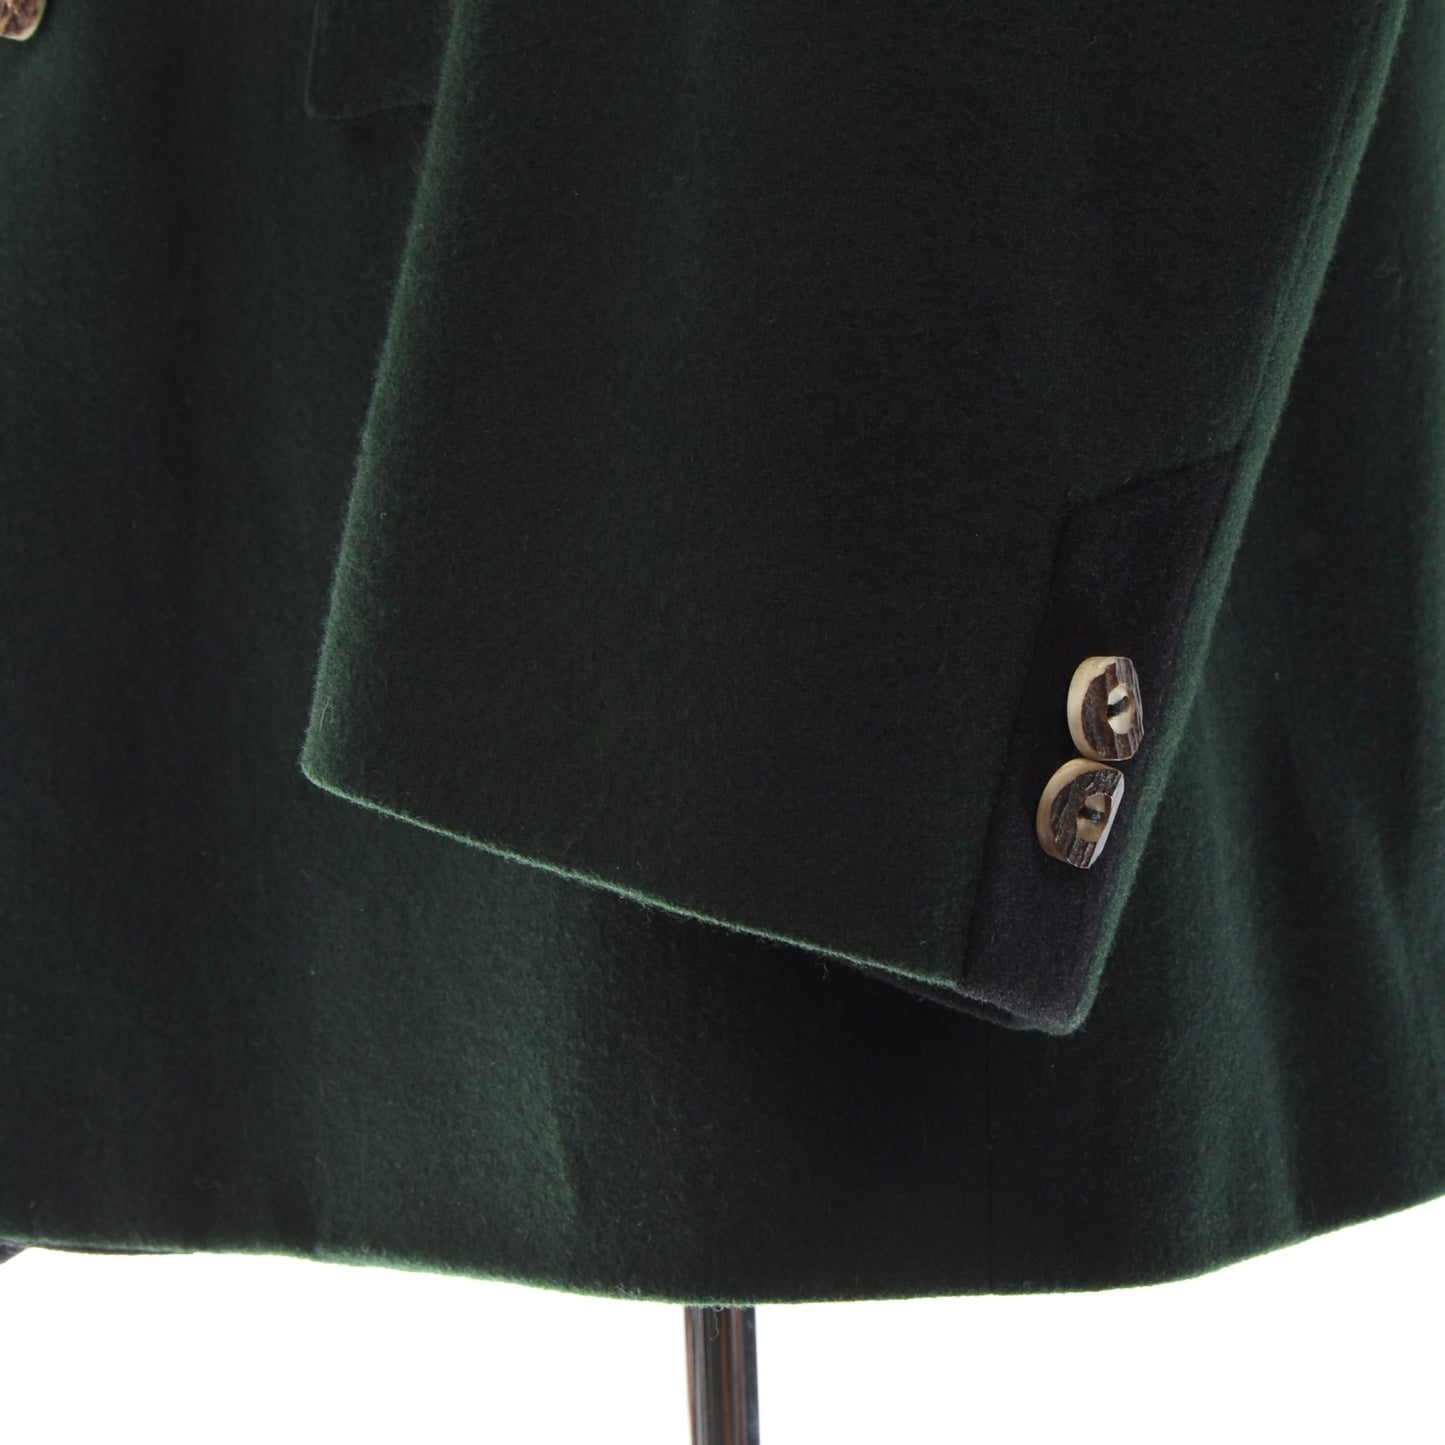 Loden Plankl Wien Tracht Wool Janker/Jacket Size 58 - Green